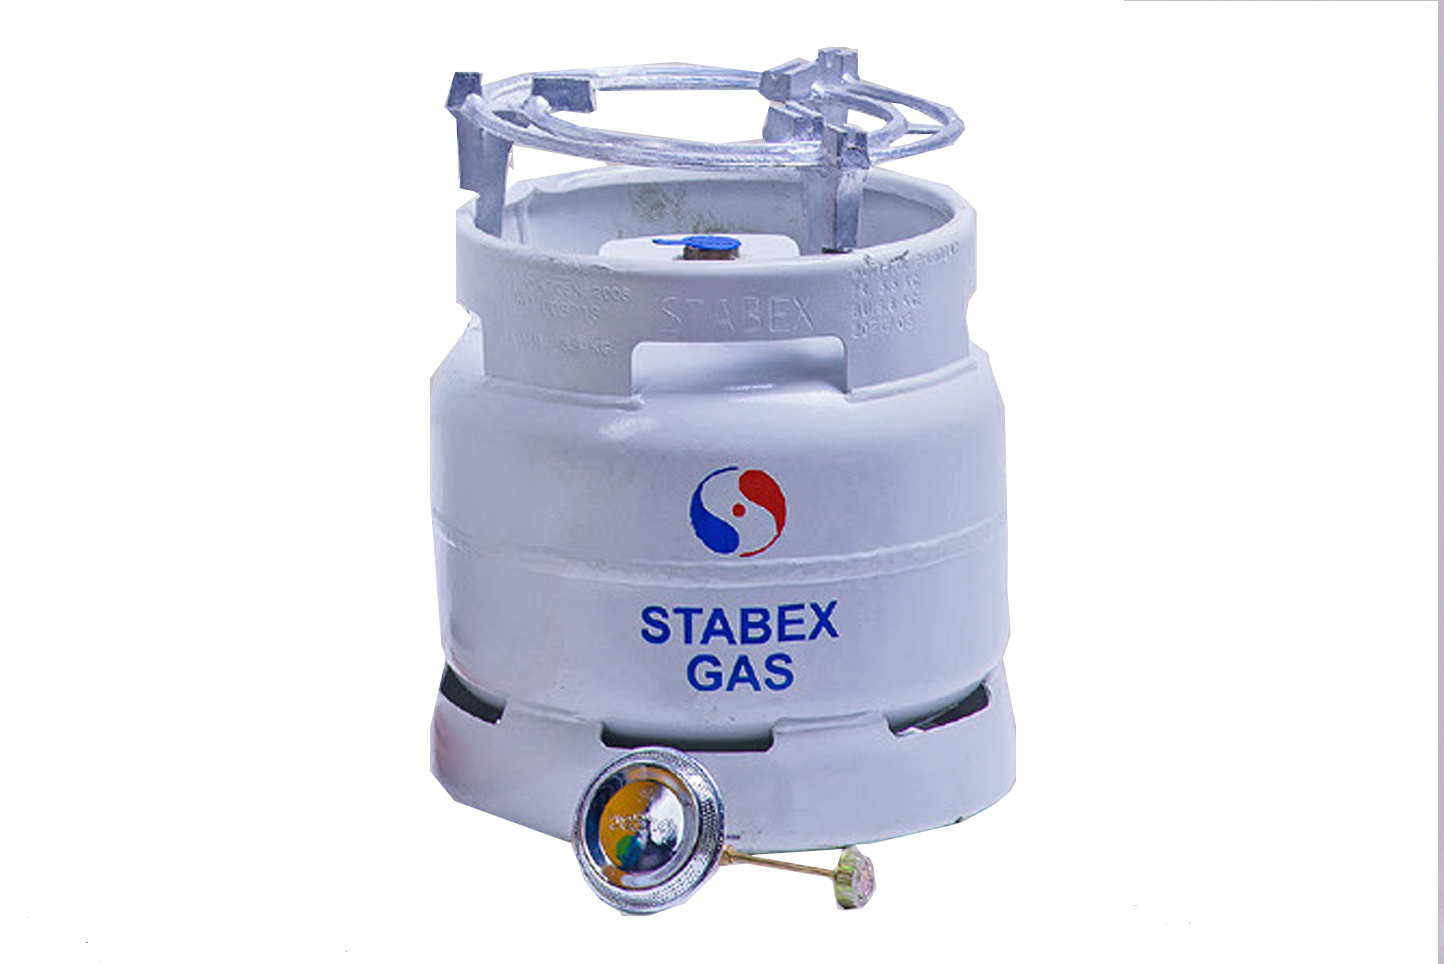 Stabex gas 6kg Fullset